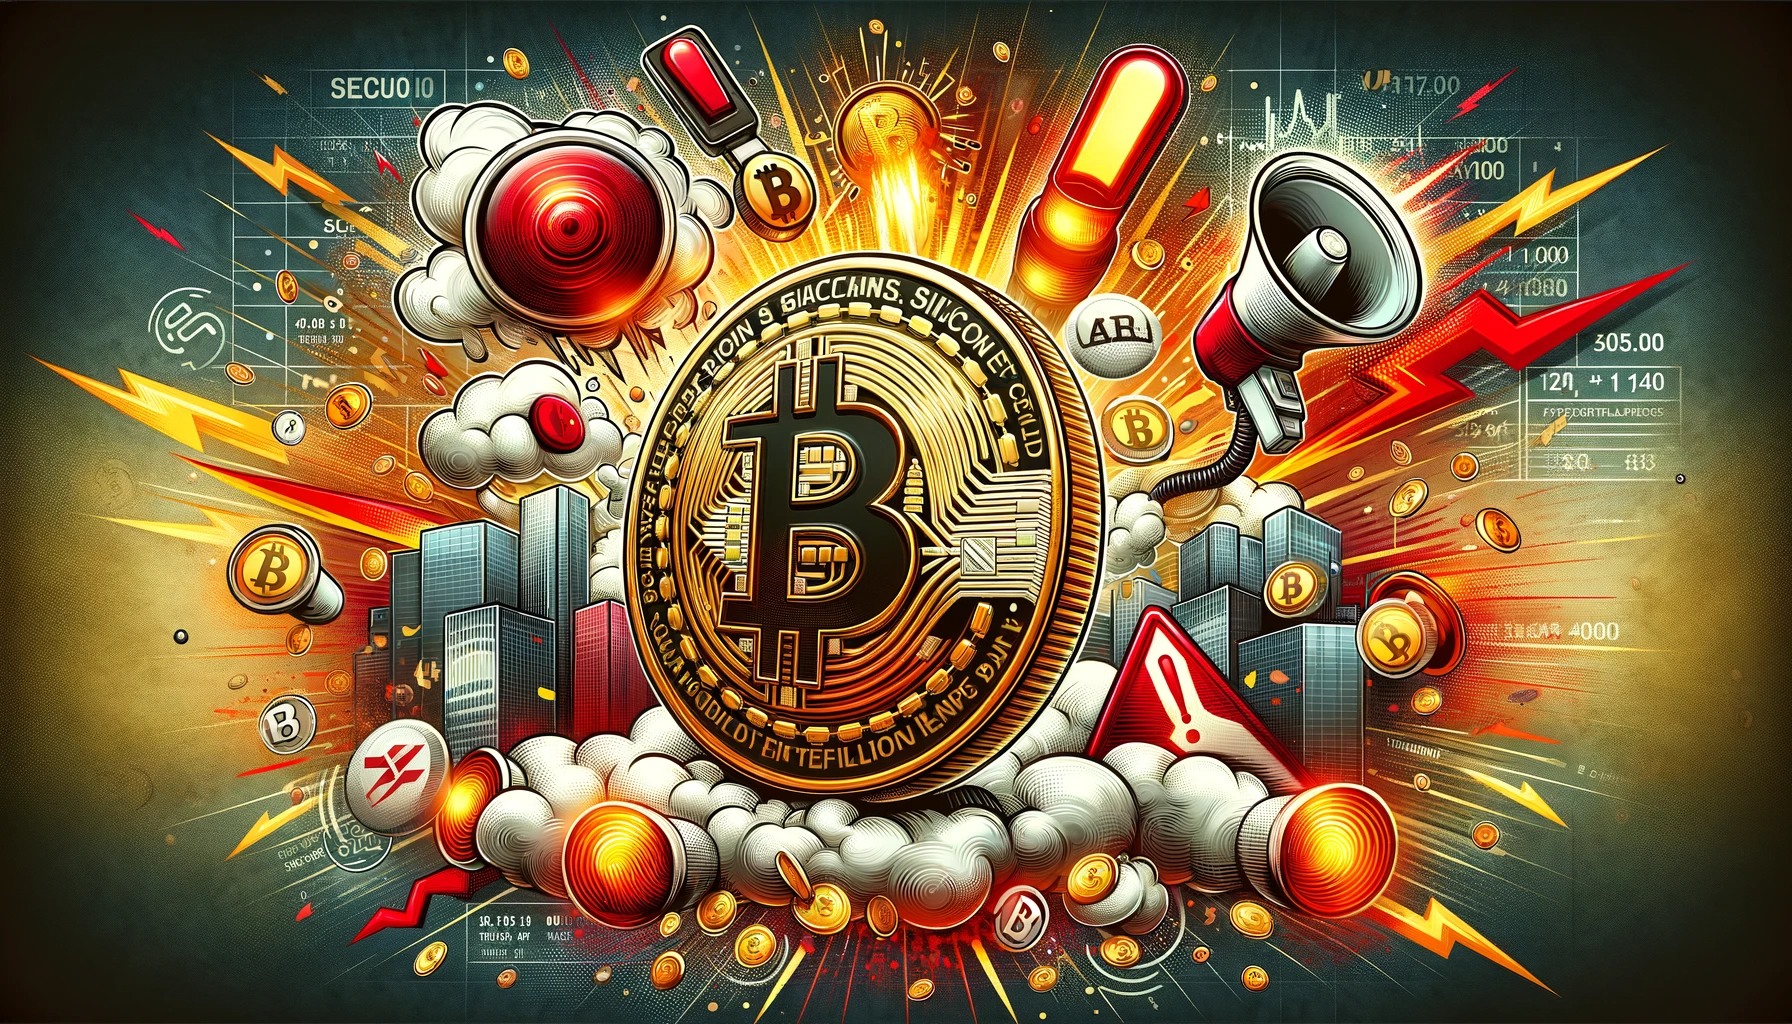 Założyciel Cardano zrównał Bitcoin z ziemią. Uważa, że jest niesłusznie faworyzowany | BitHub.pl